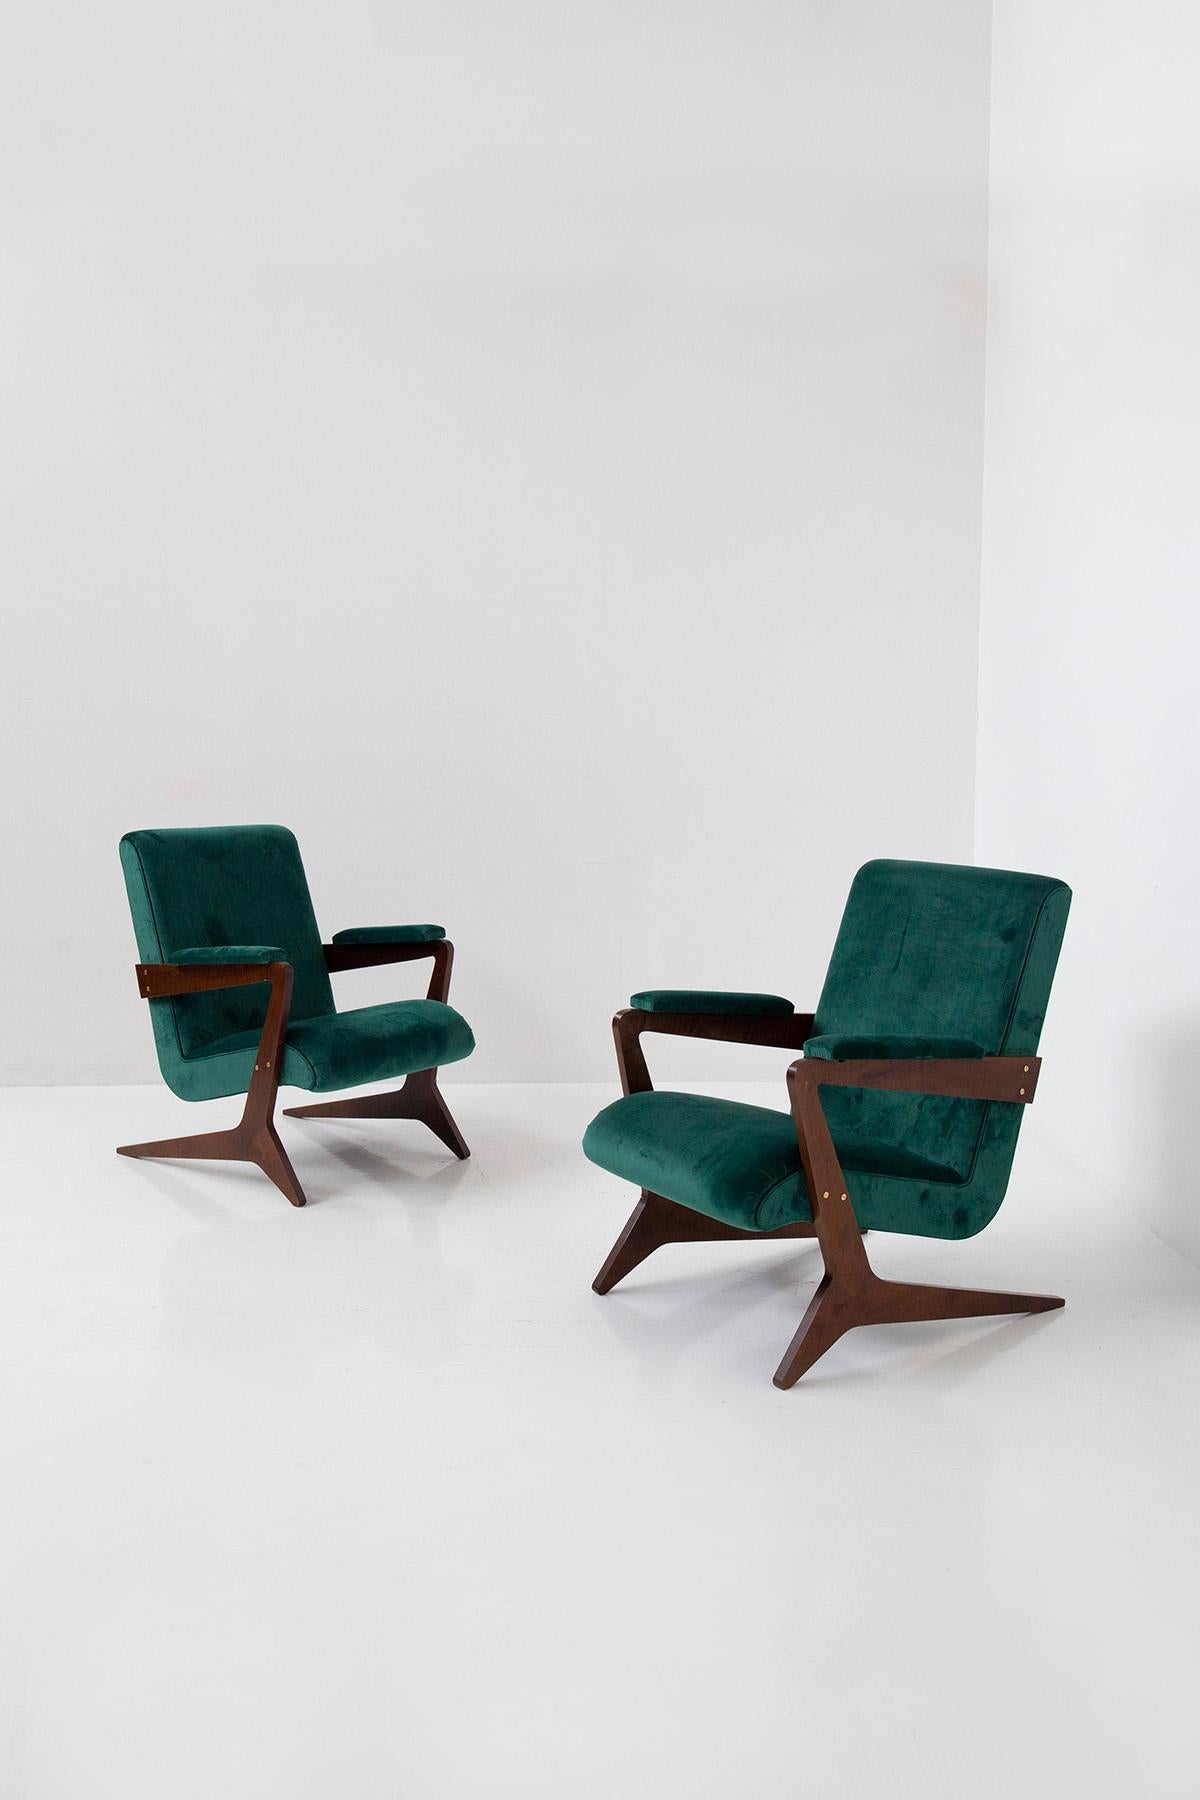 ransportez-vous au cœur vibrant du Brésil du XXe siècle avec cette captivante paire de fauteuils Brazilian Geometric, incarnation de la modernité et de l'élégance géométrique. Artistics avec précision et flair, ces chaises témoignent de